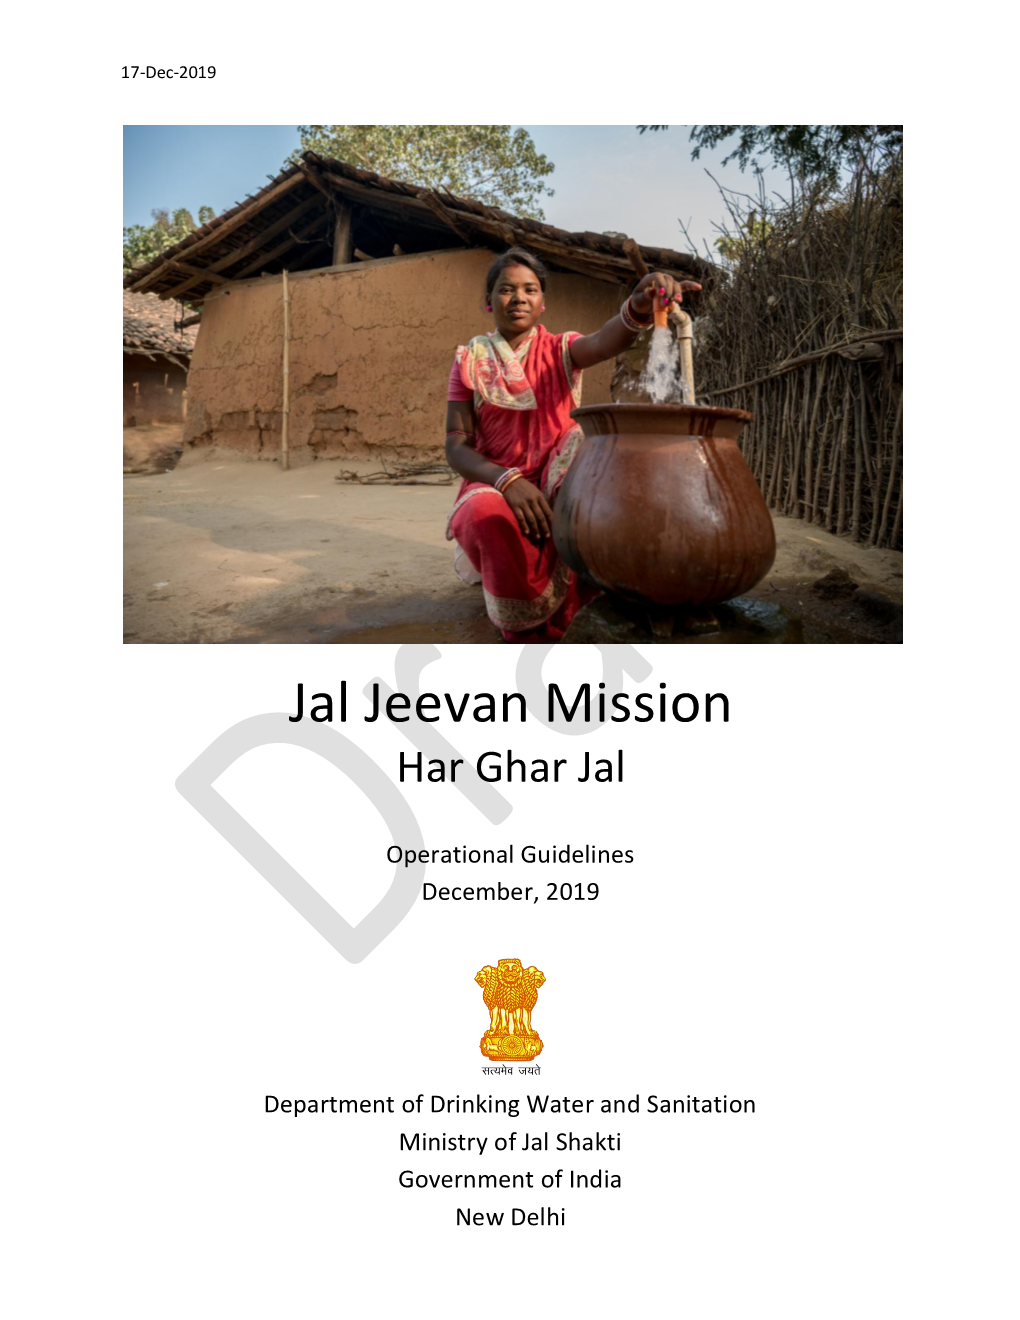 Jal Jeevan Mission Har Ghar Jal